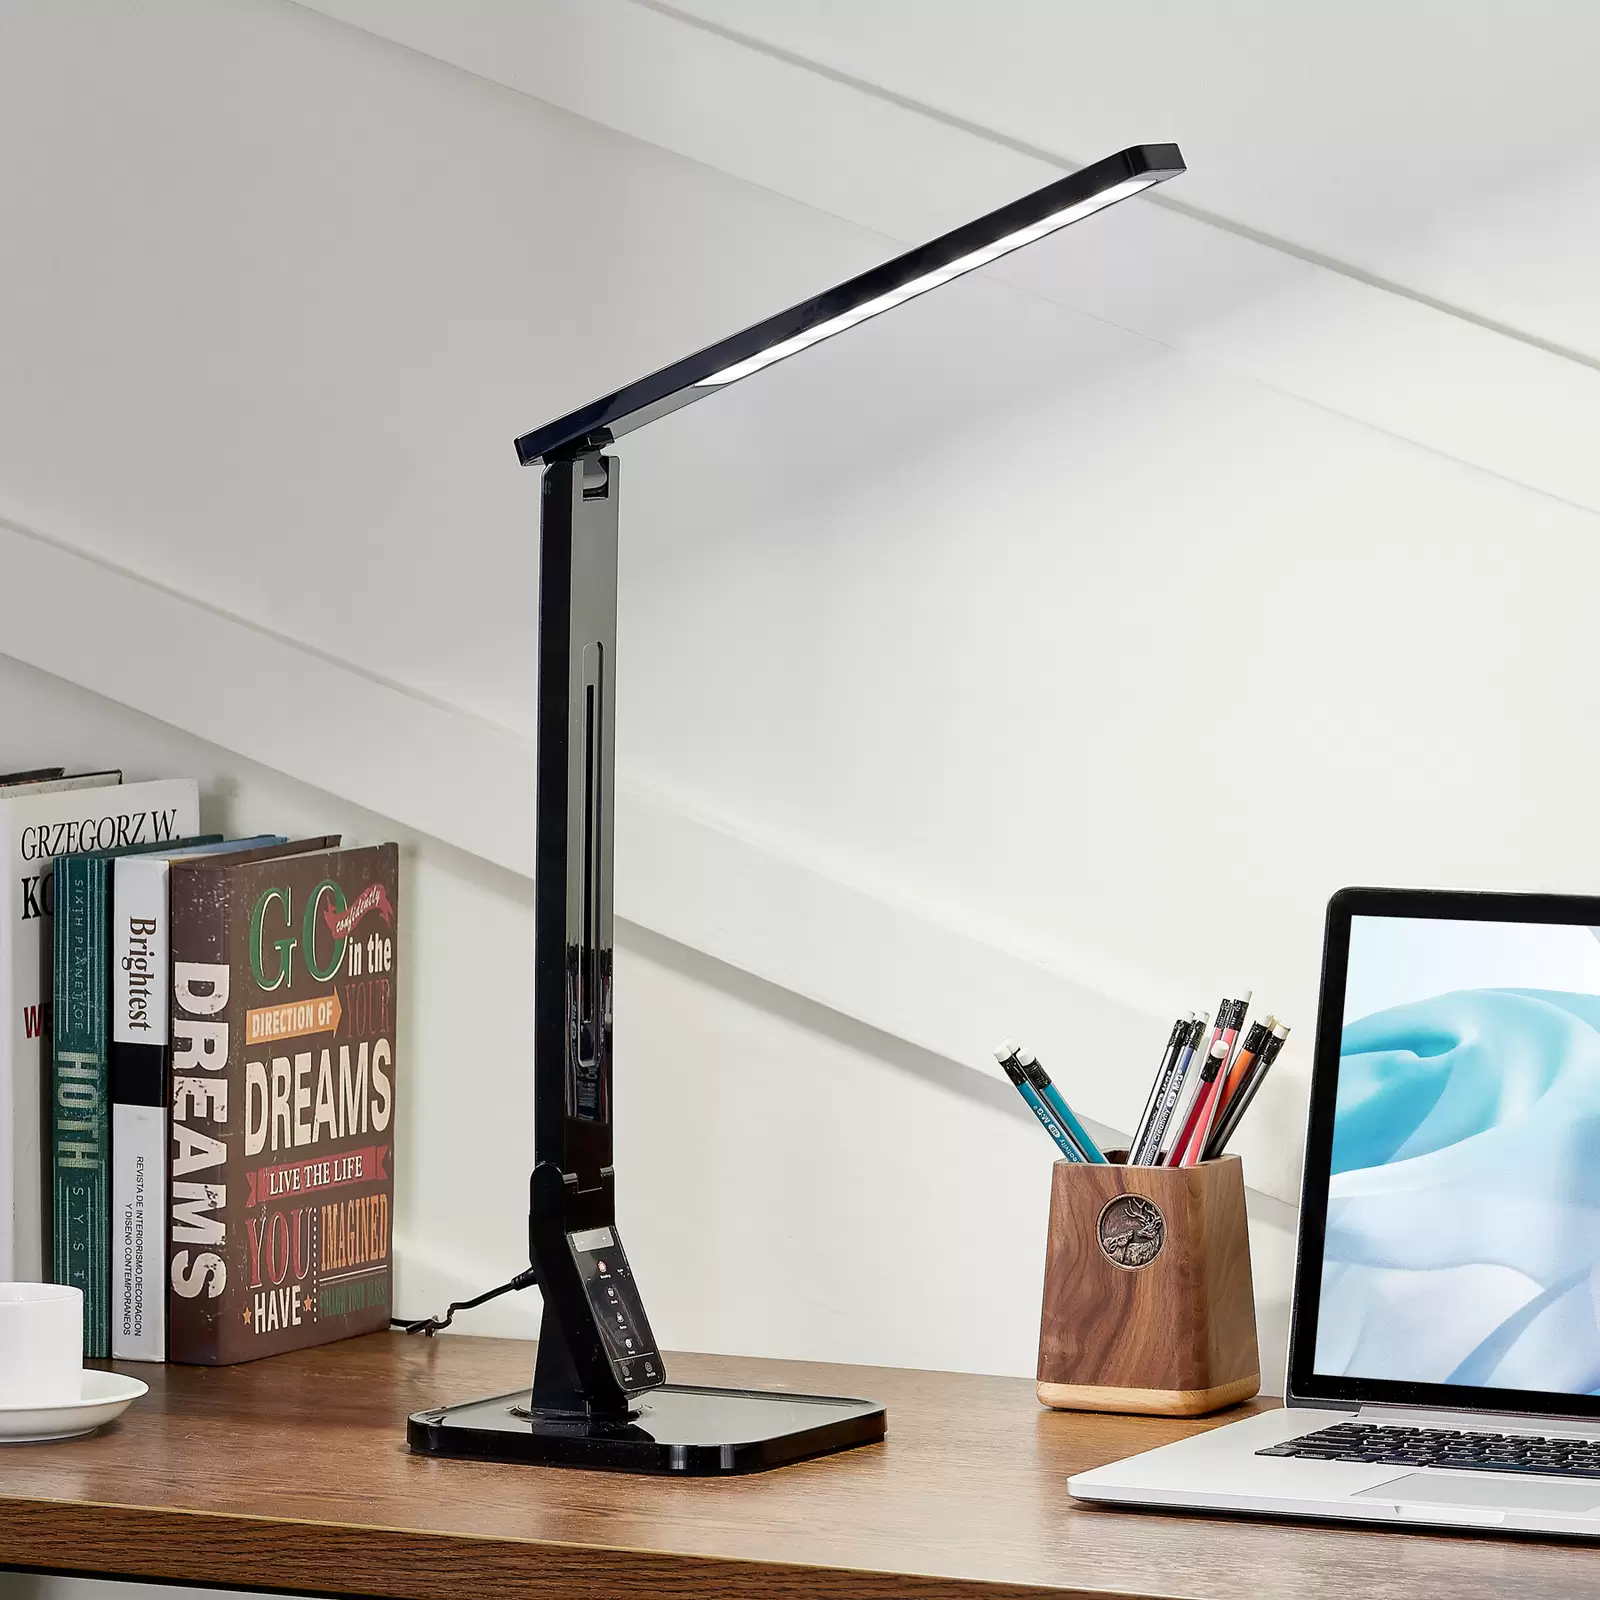 Lampe de bureau design blanche avec LED et variateur tactile - Eleni